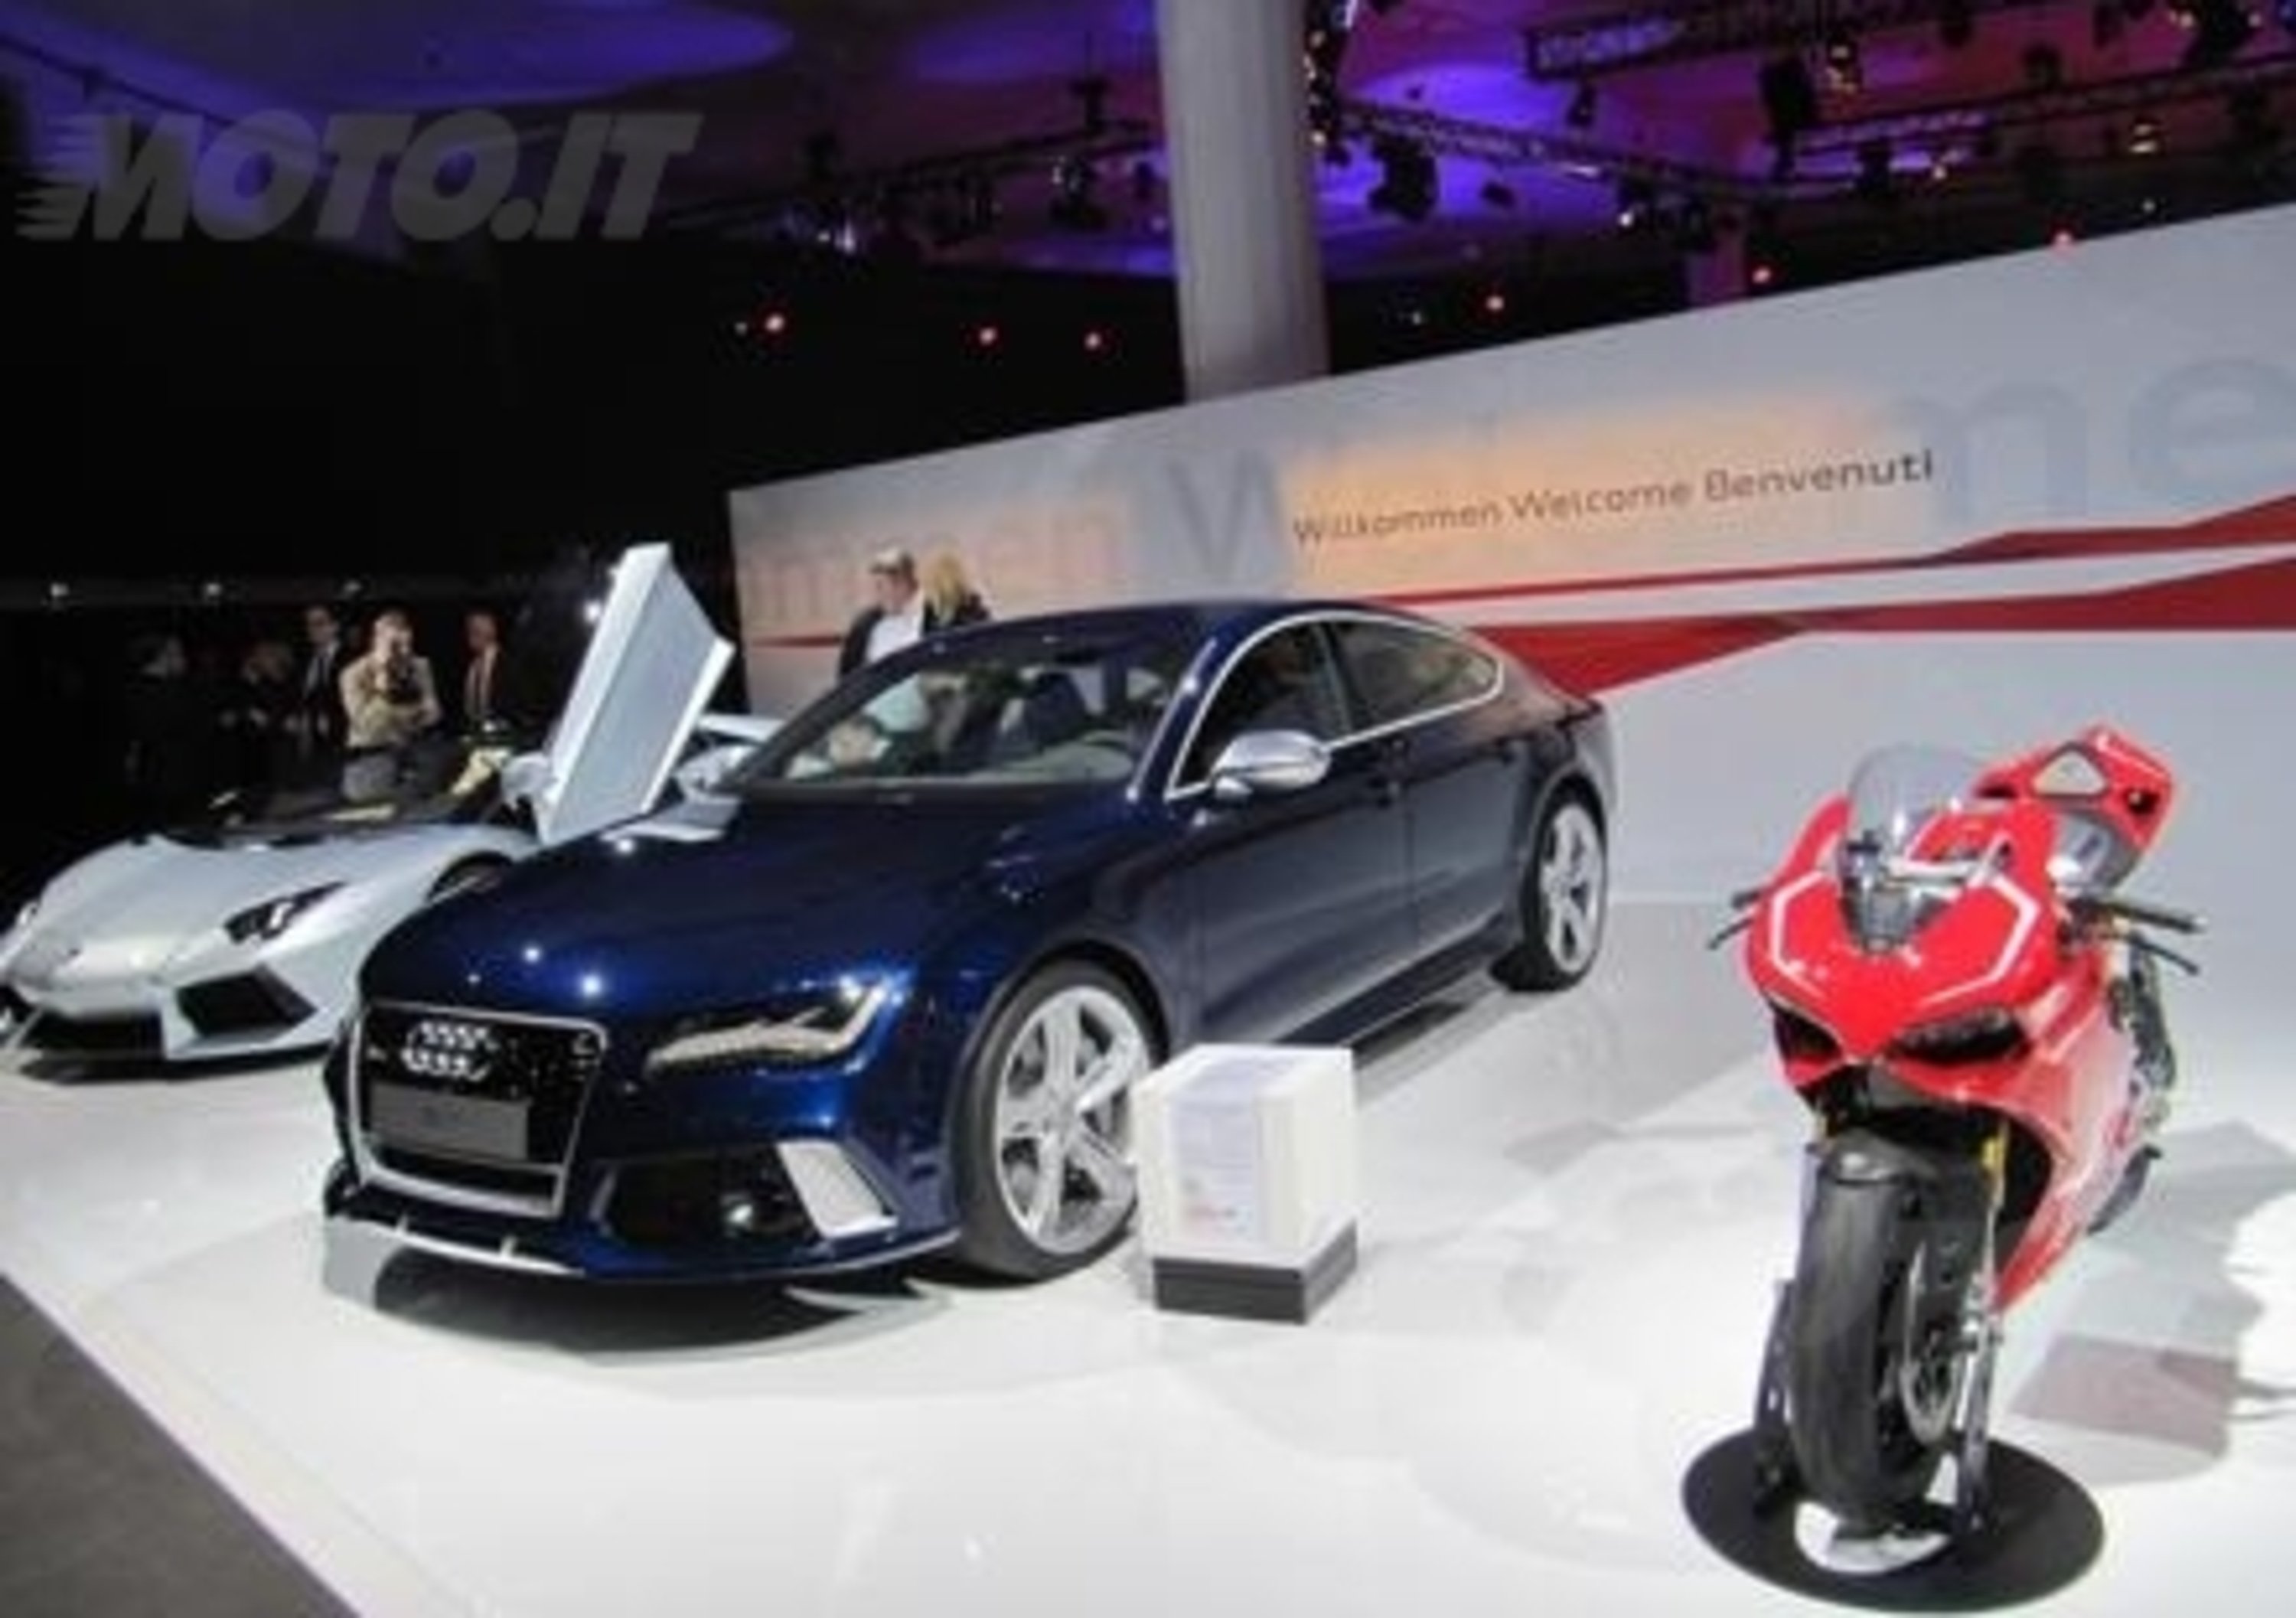 Audi e Ducati, sinergie e indipendenza per sviluppare i prodotti e far crescere il marchio italiano